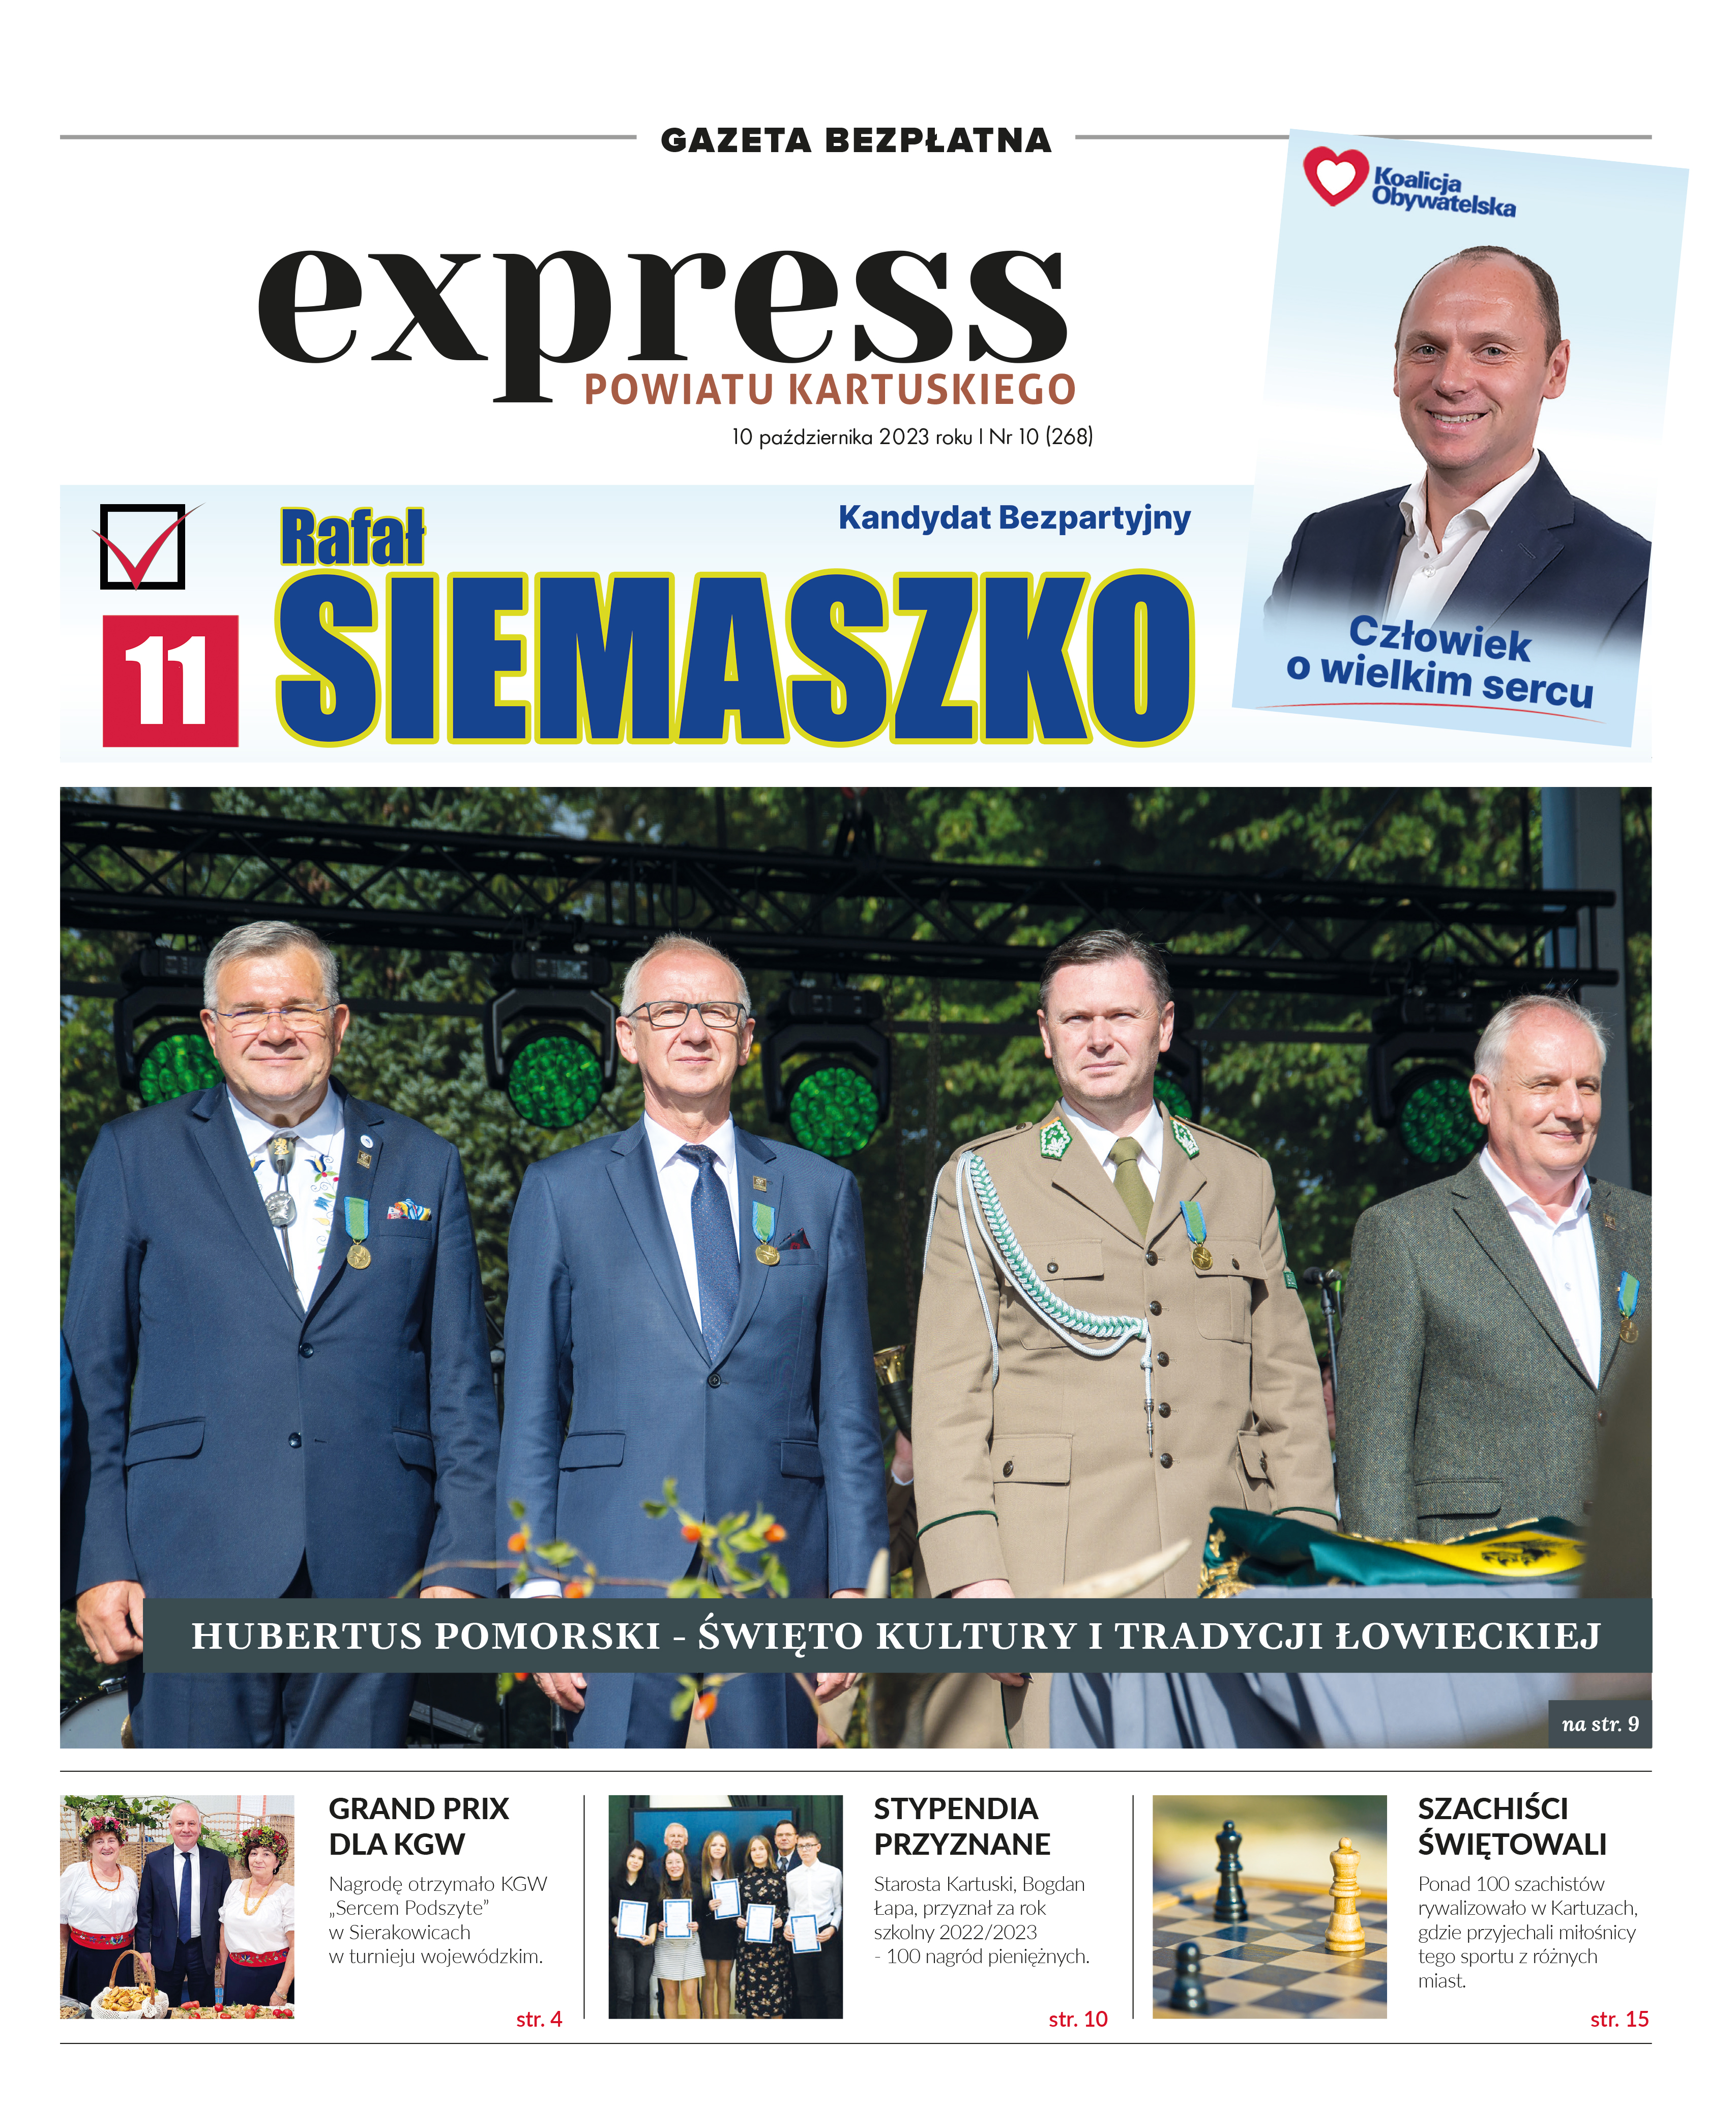 Express Powiatu Kartuskiego - nr. 268.pdf